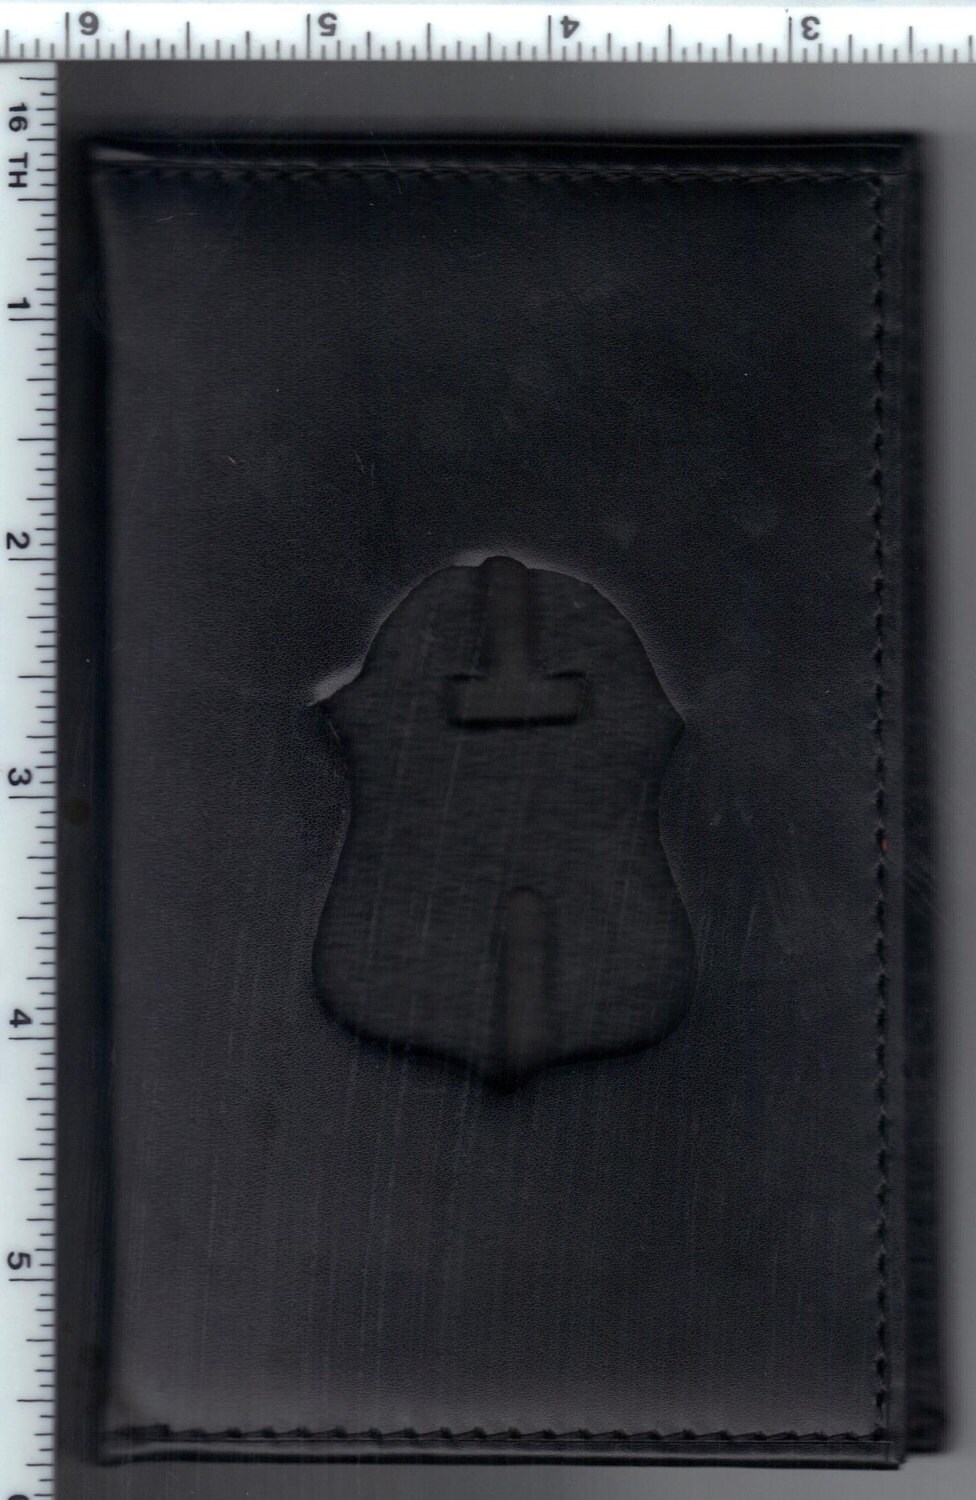 FBI Badge Cut-Out Wallet für zwei Ausweise Ausweis und Ausweis sind nicht  im Lieferumfang enthalten - .de